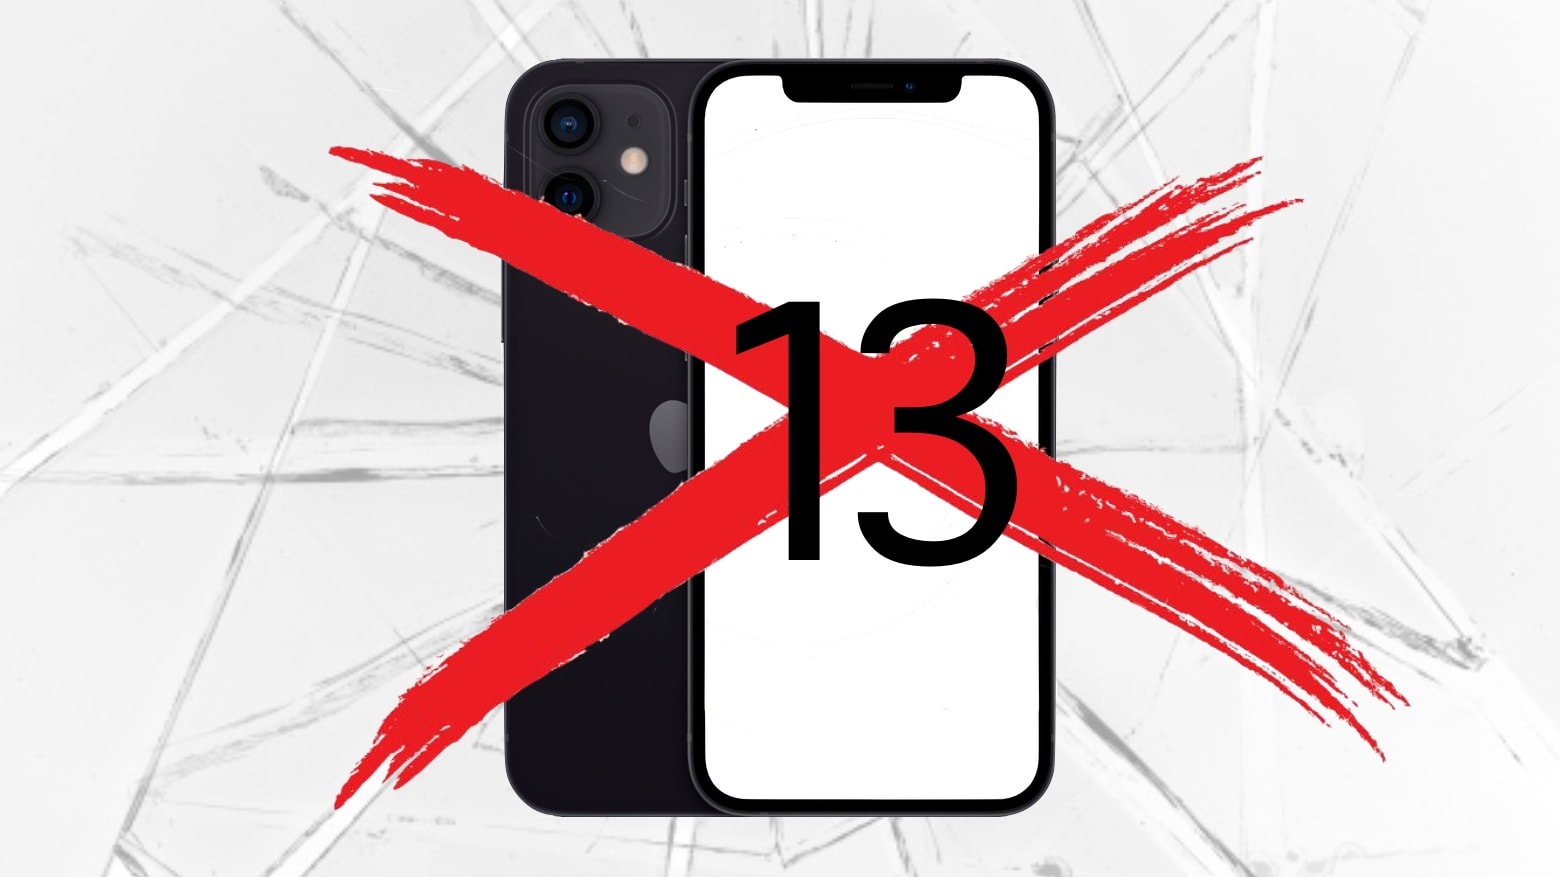 Alguns clientes preferem que novo iPhone não carregue o número 13.